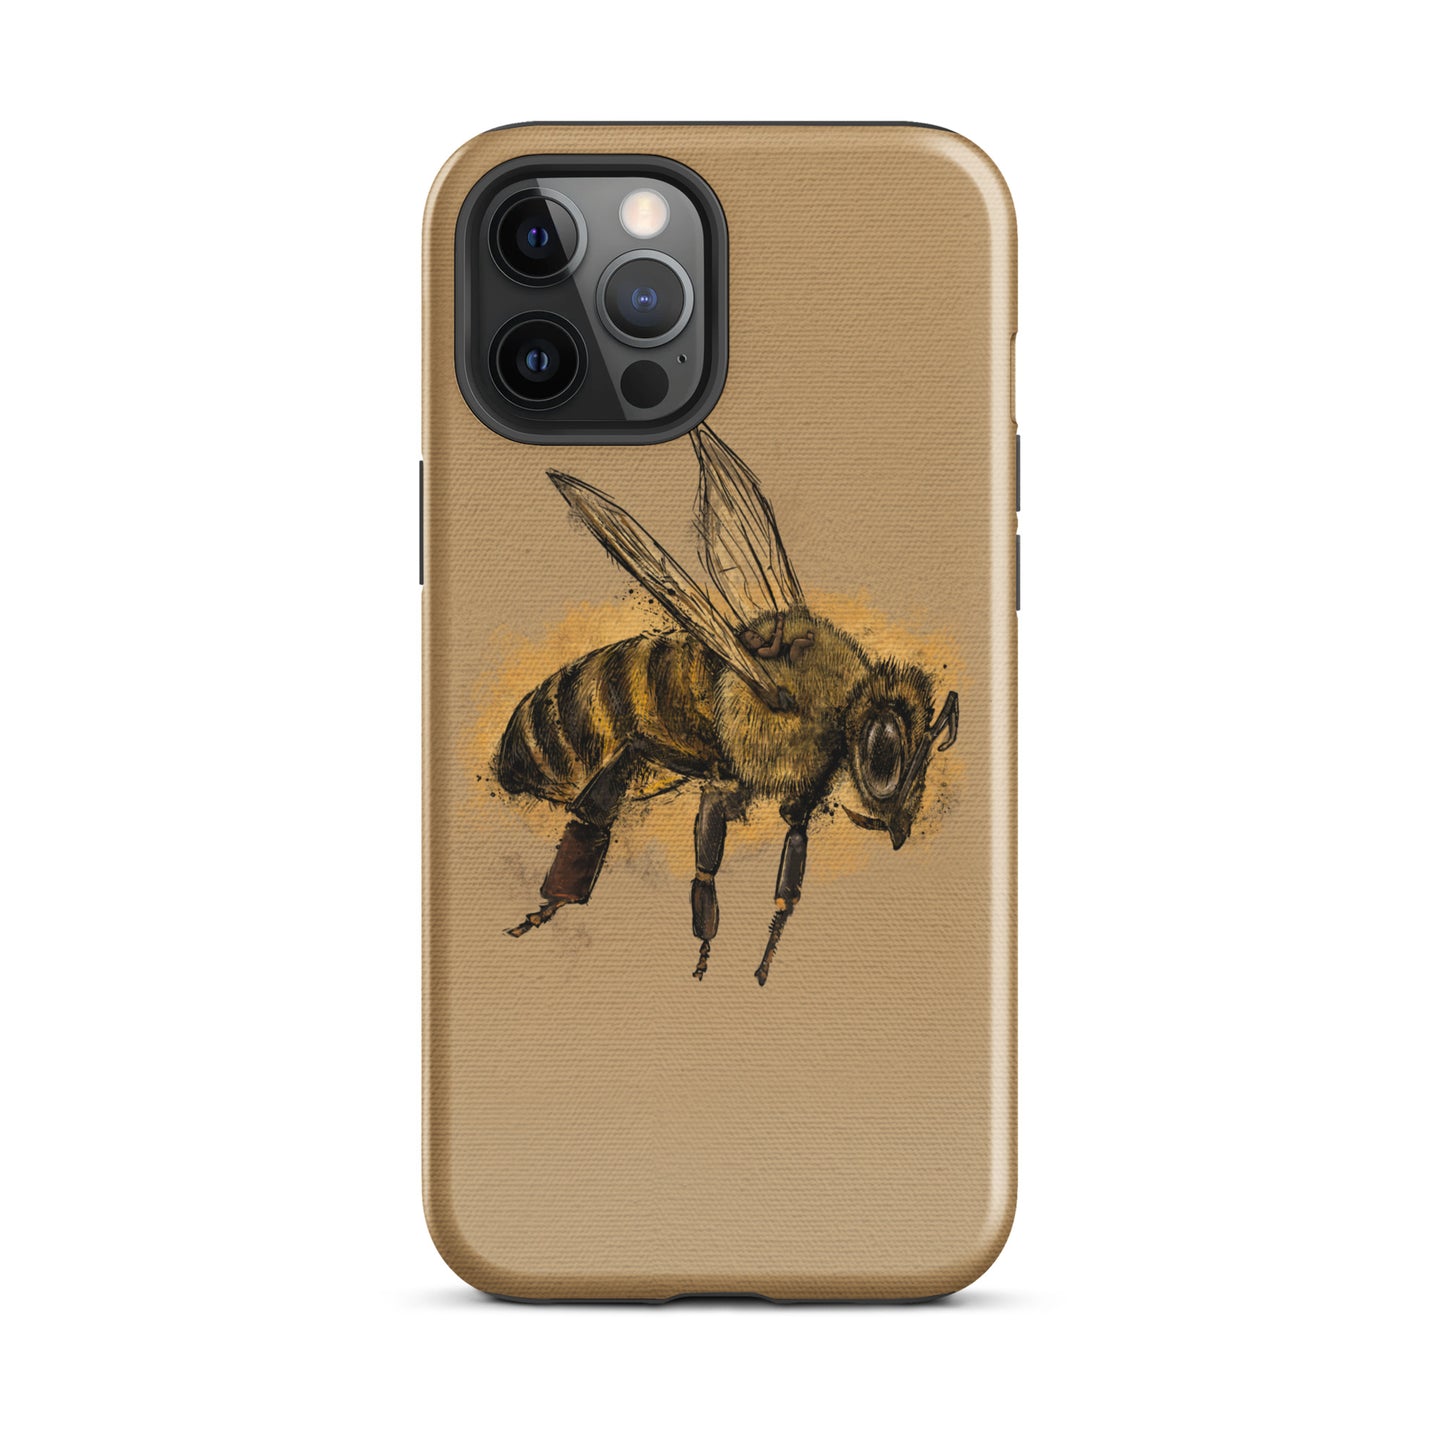 BEE PHONE CASE